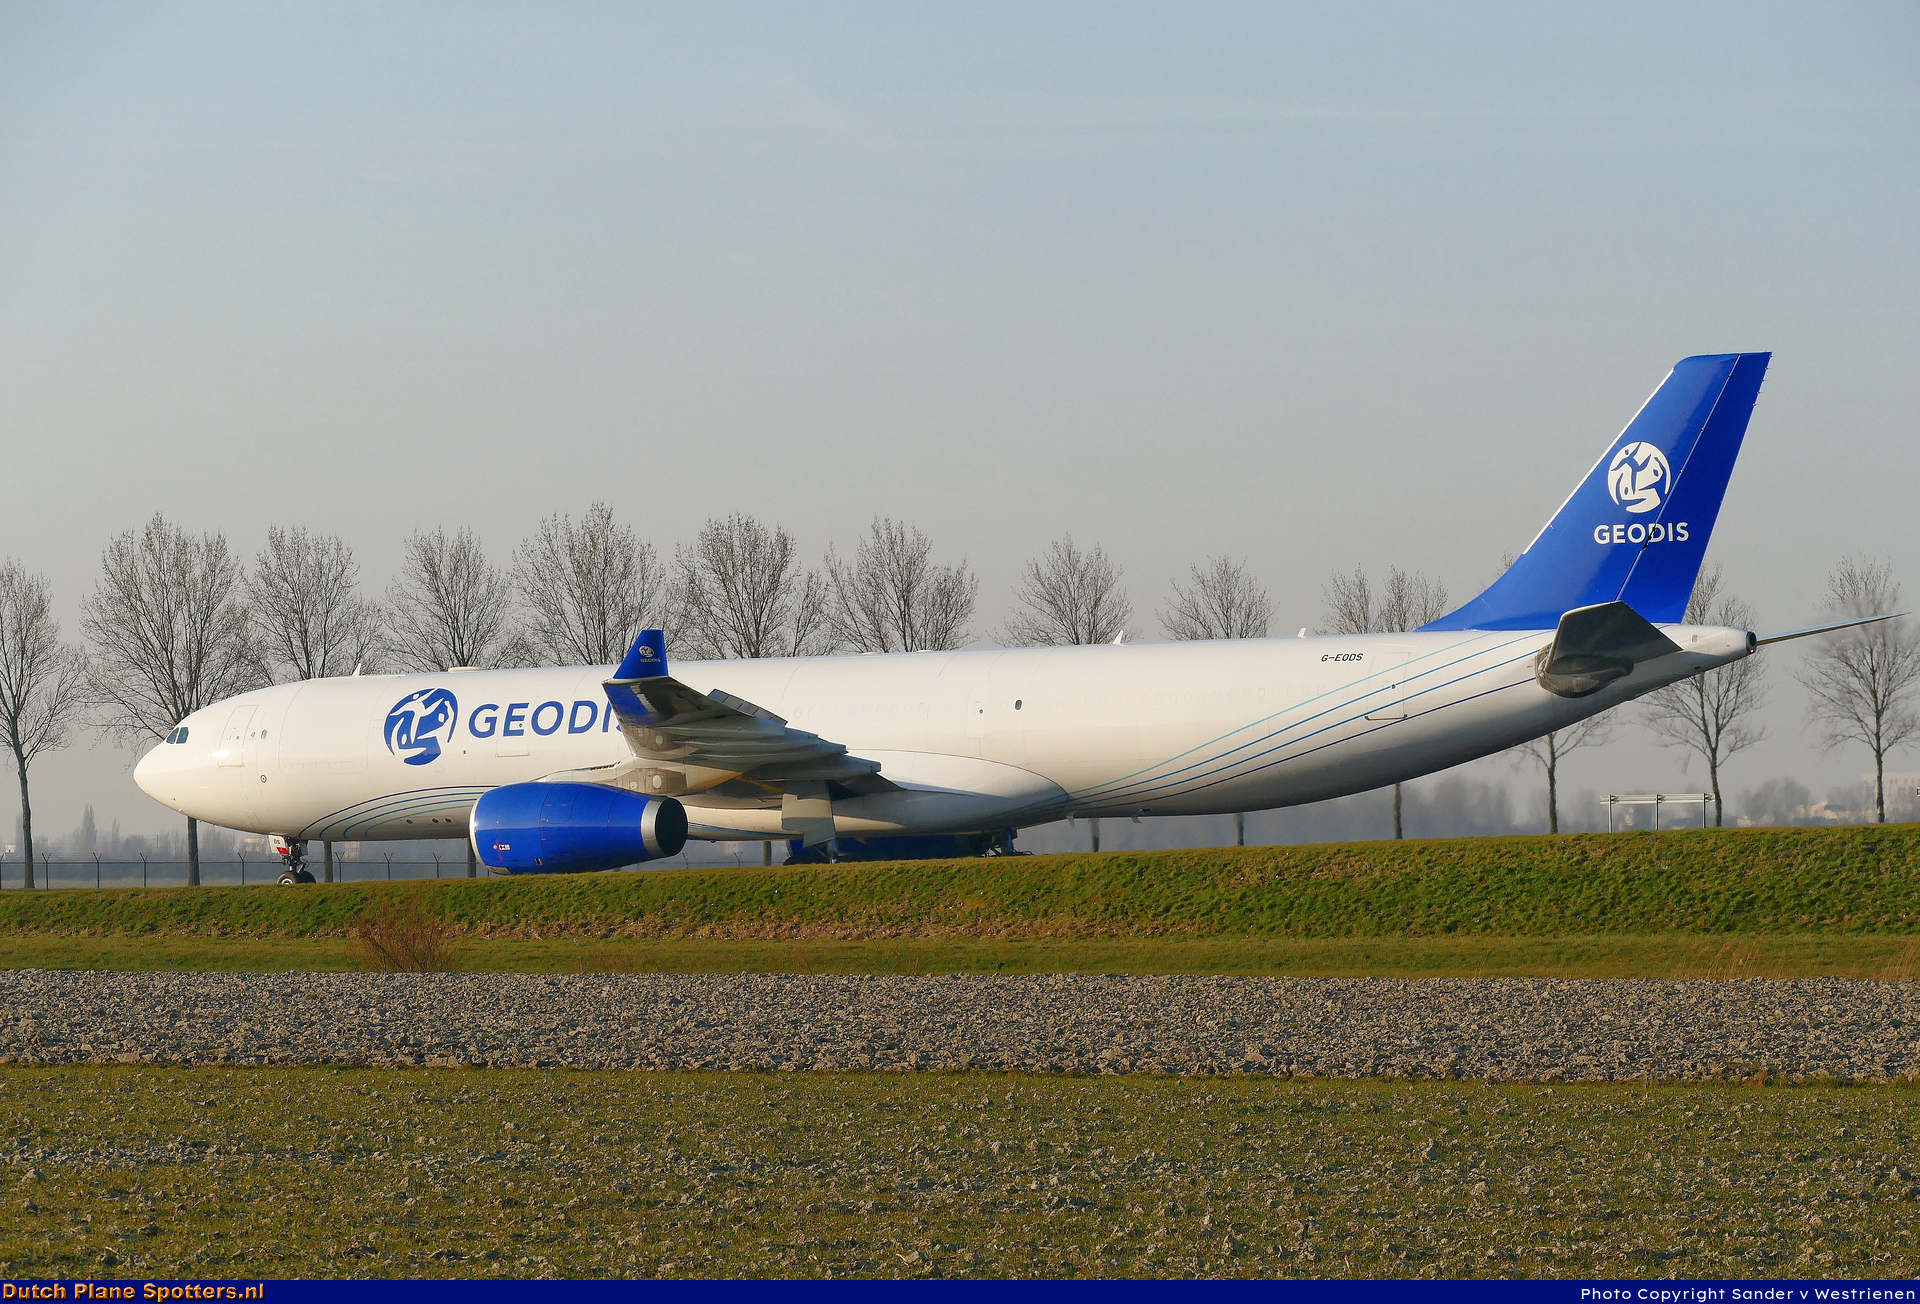 G-EODS Airbus A330-300 Titan Airways (GEODIS Air Network) by Sander v Westrienen